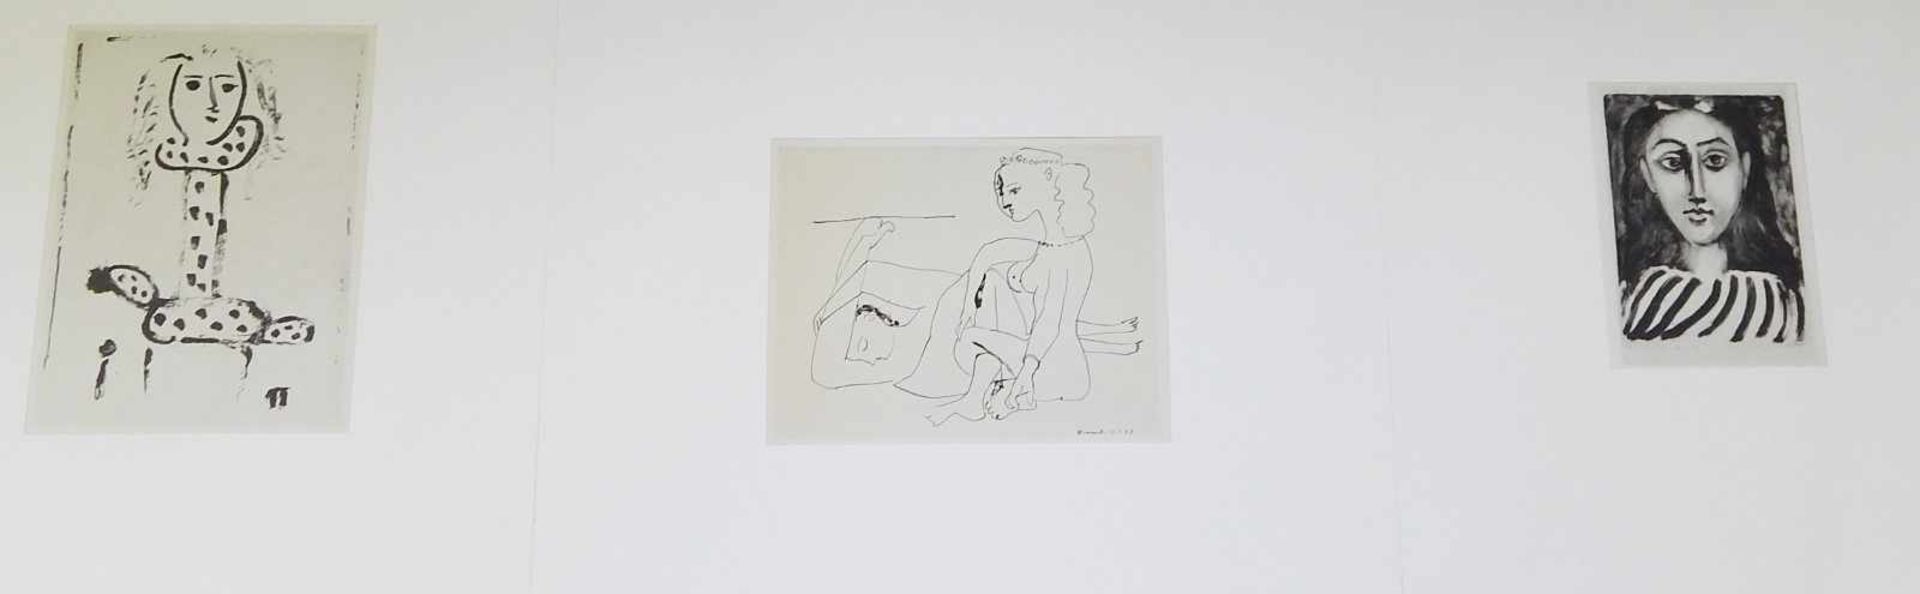 Pablo Picasso(1881-1973) Konvolut 3 Lithographien:"Femmes au Fauteuil", "Tete de jeune femme" und "